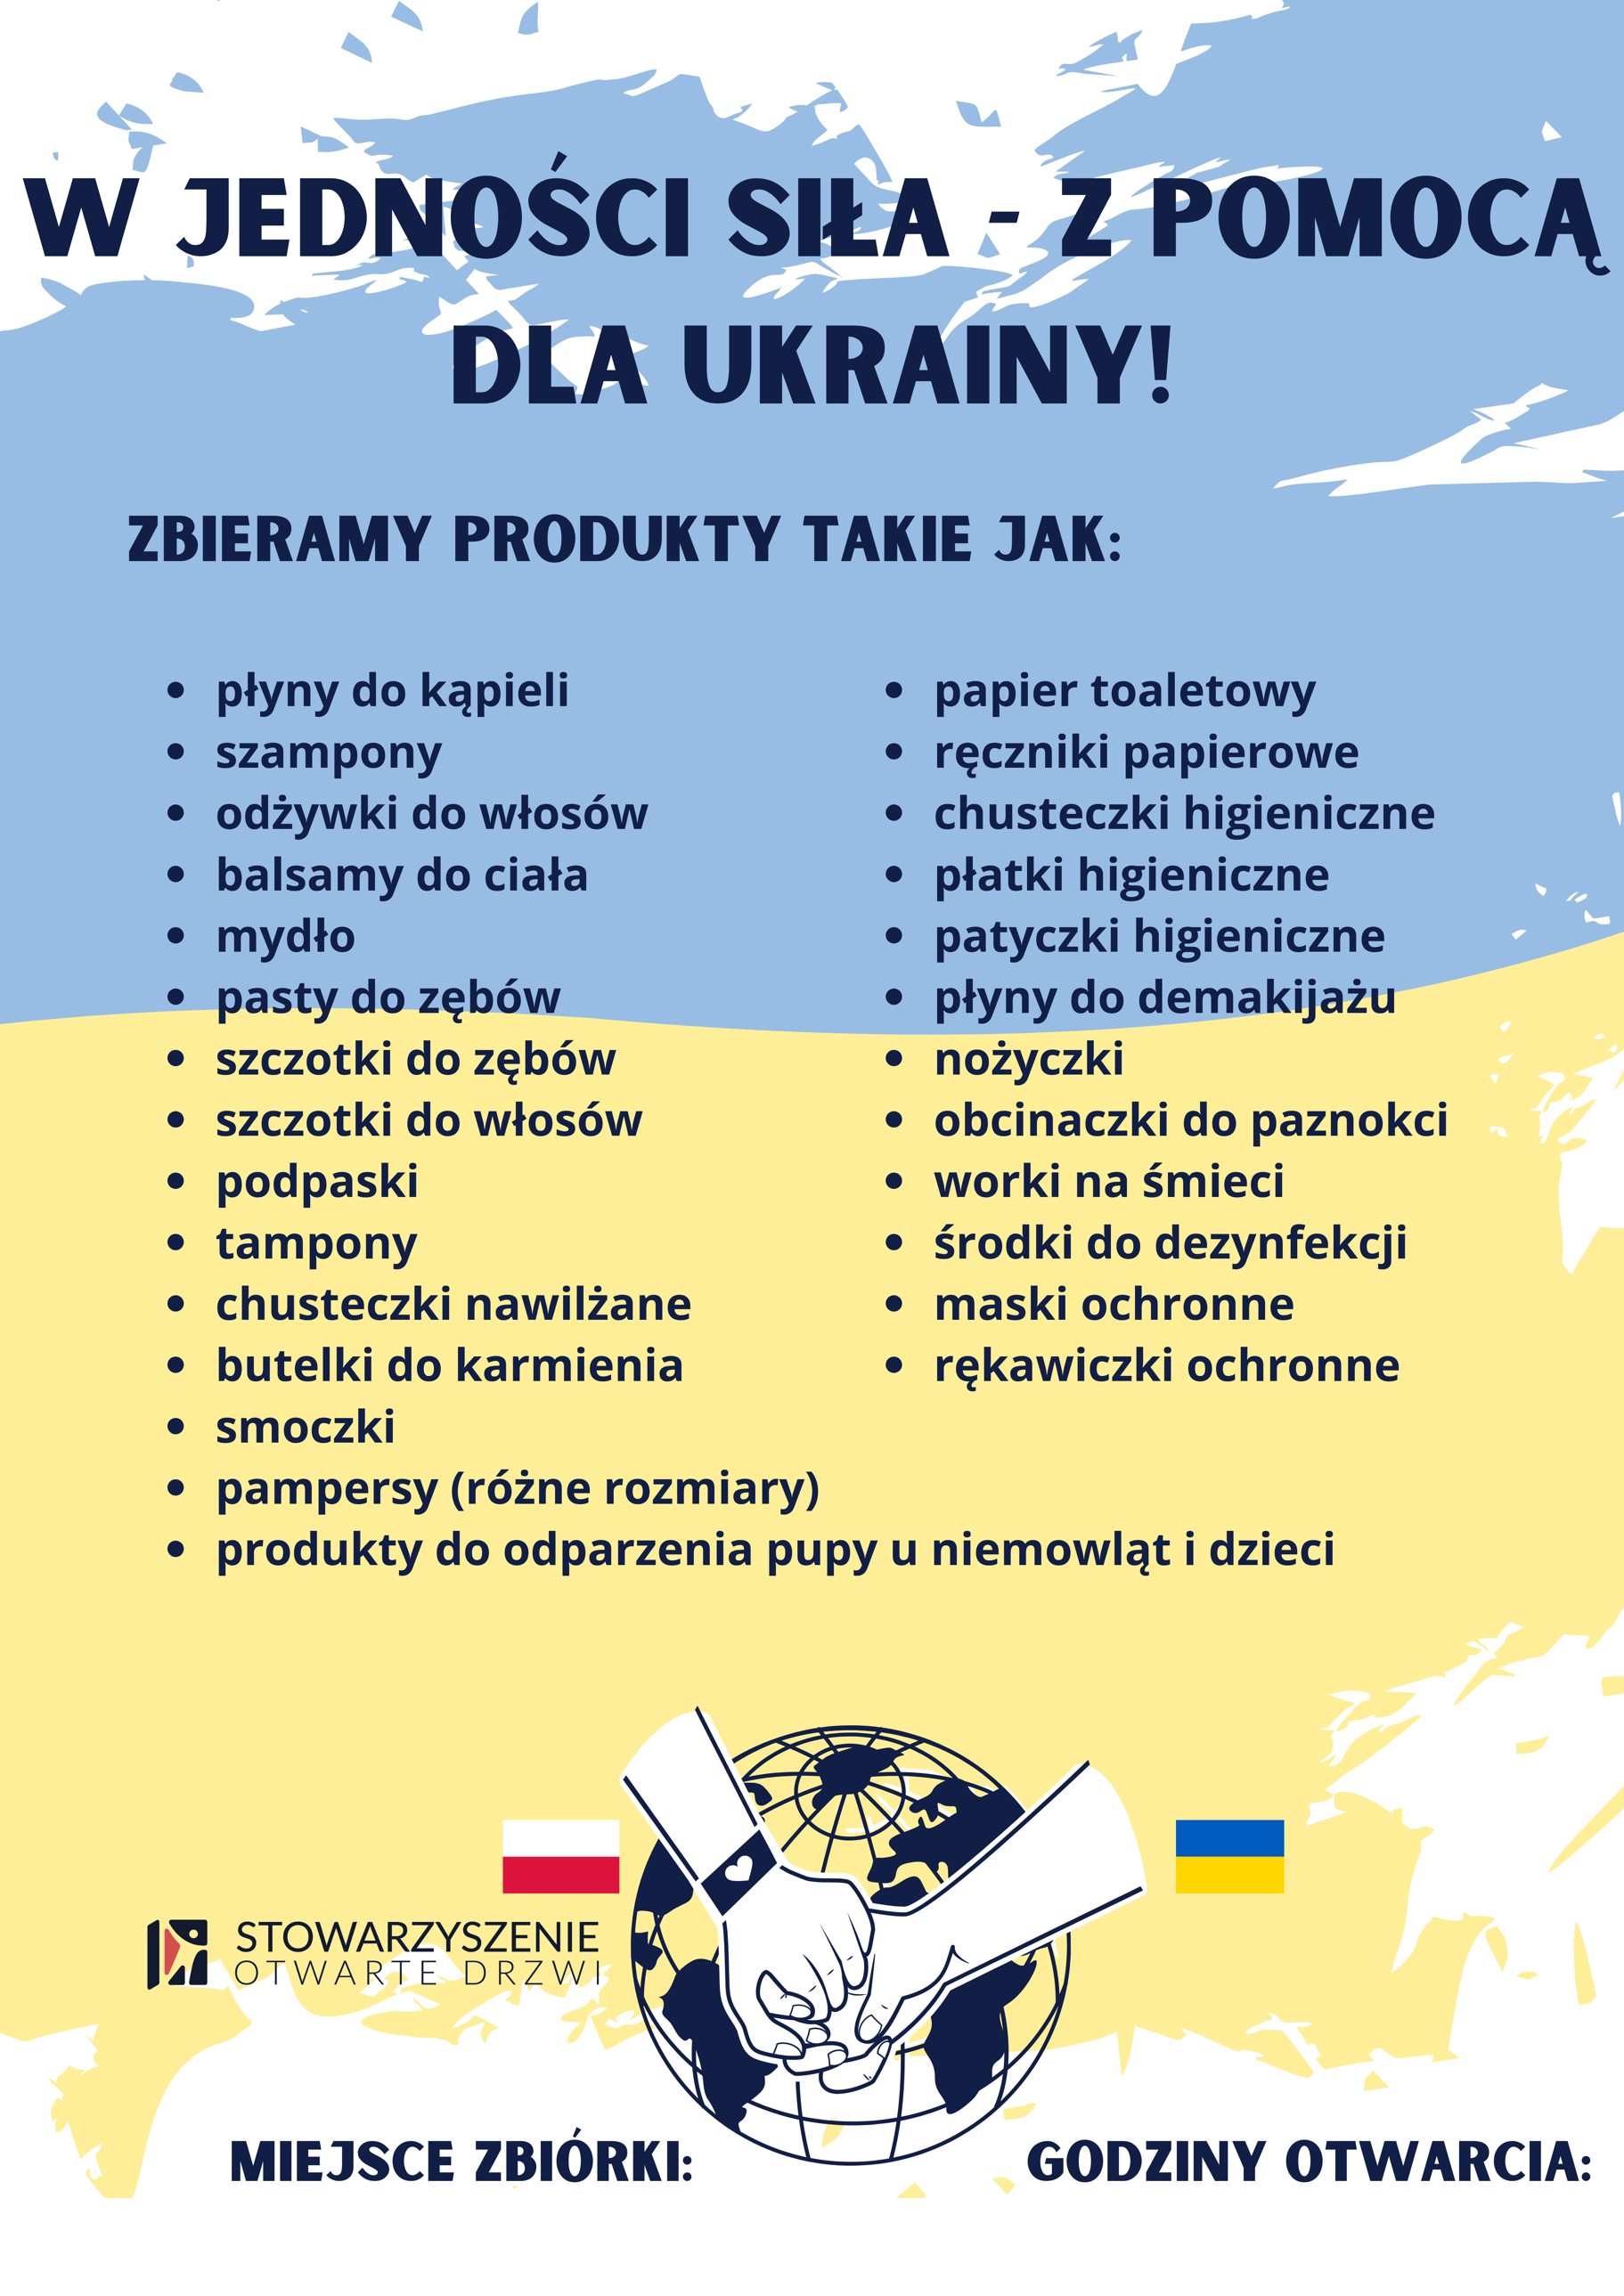 W jedności siła – pomoc dla Ukrainy!